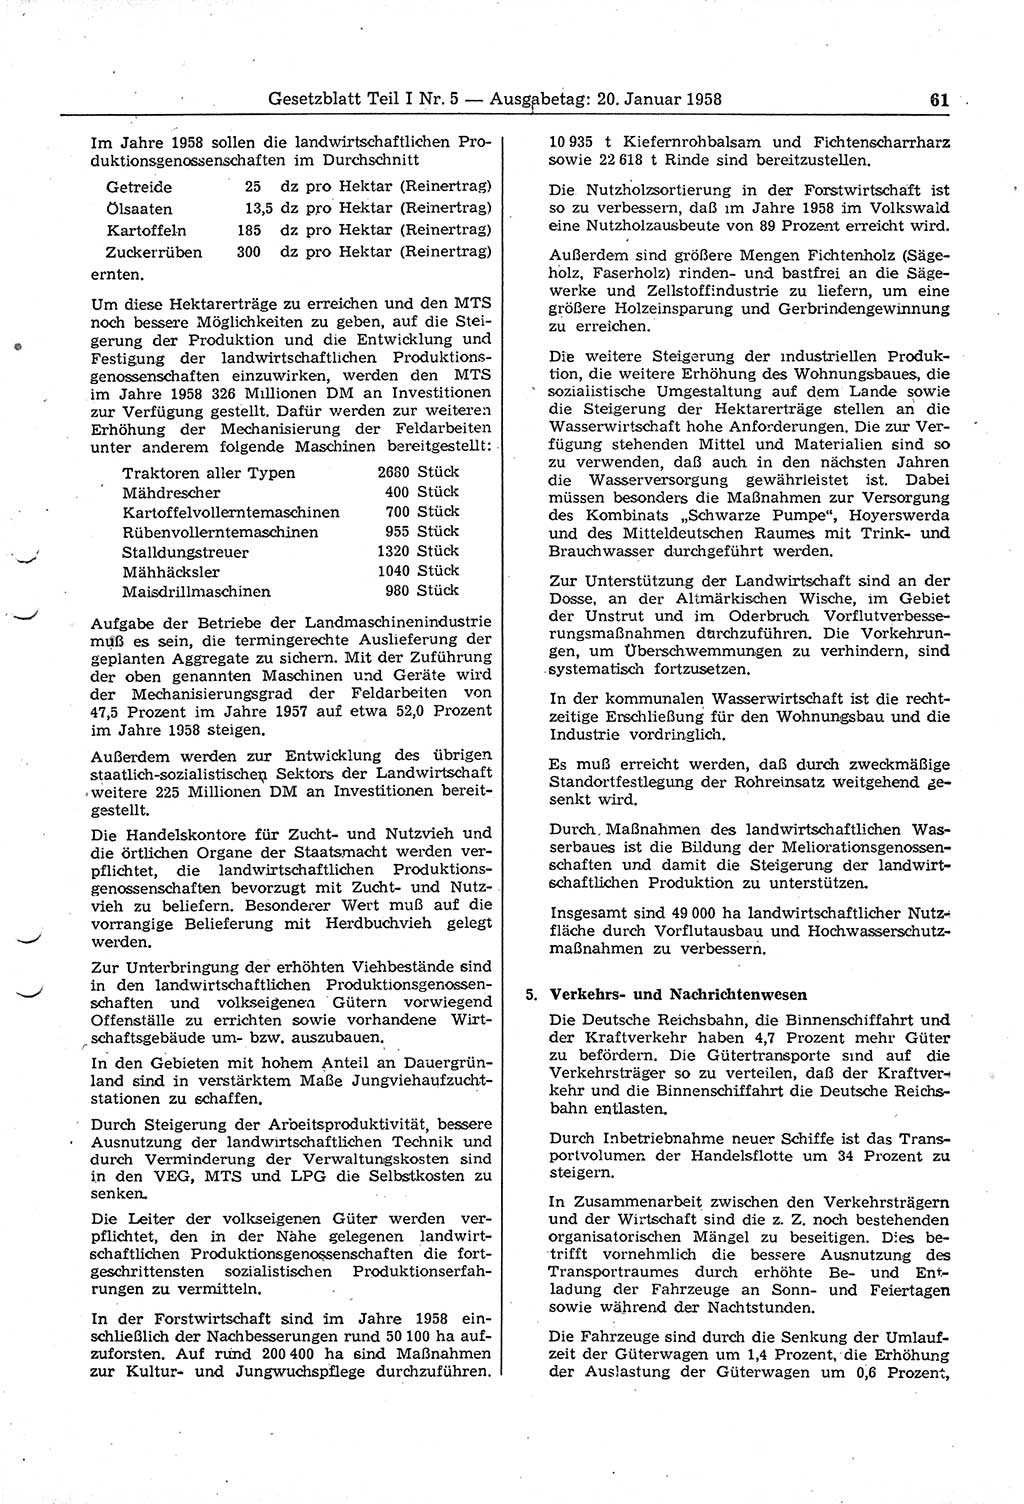 Gesetzblatt (GBl.) der Deutschen Demokratischen Republik (DDR) Teil Ⅰ 1958, Seite 61 (GBl. DDR Ⅰ 1958, S. 61)